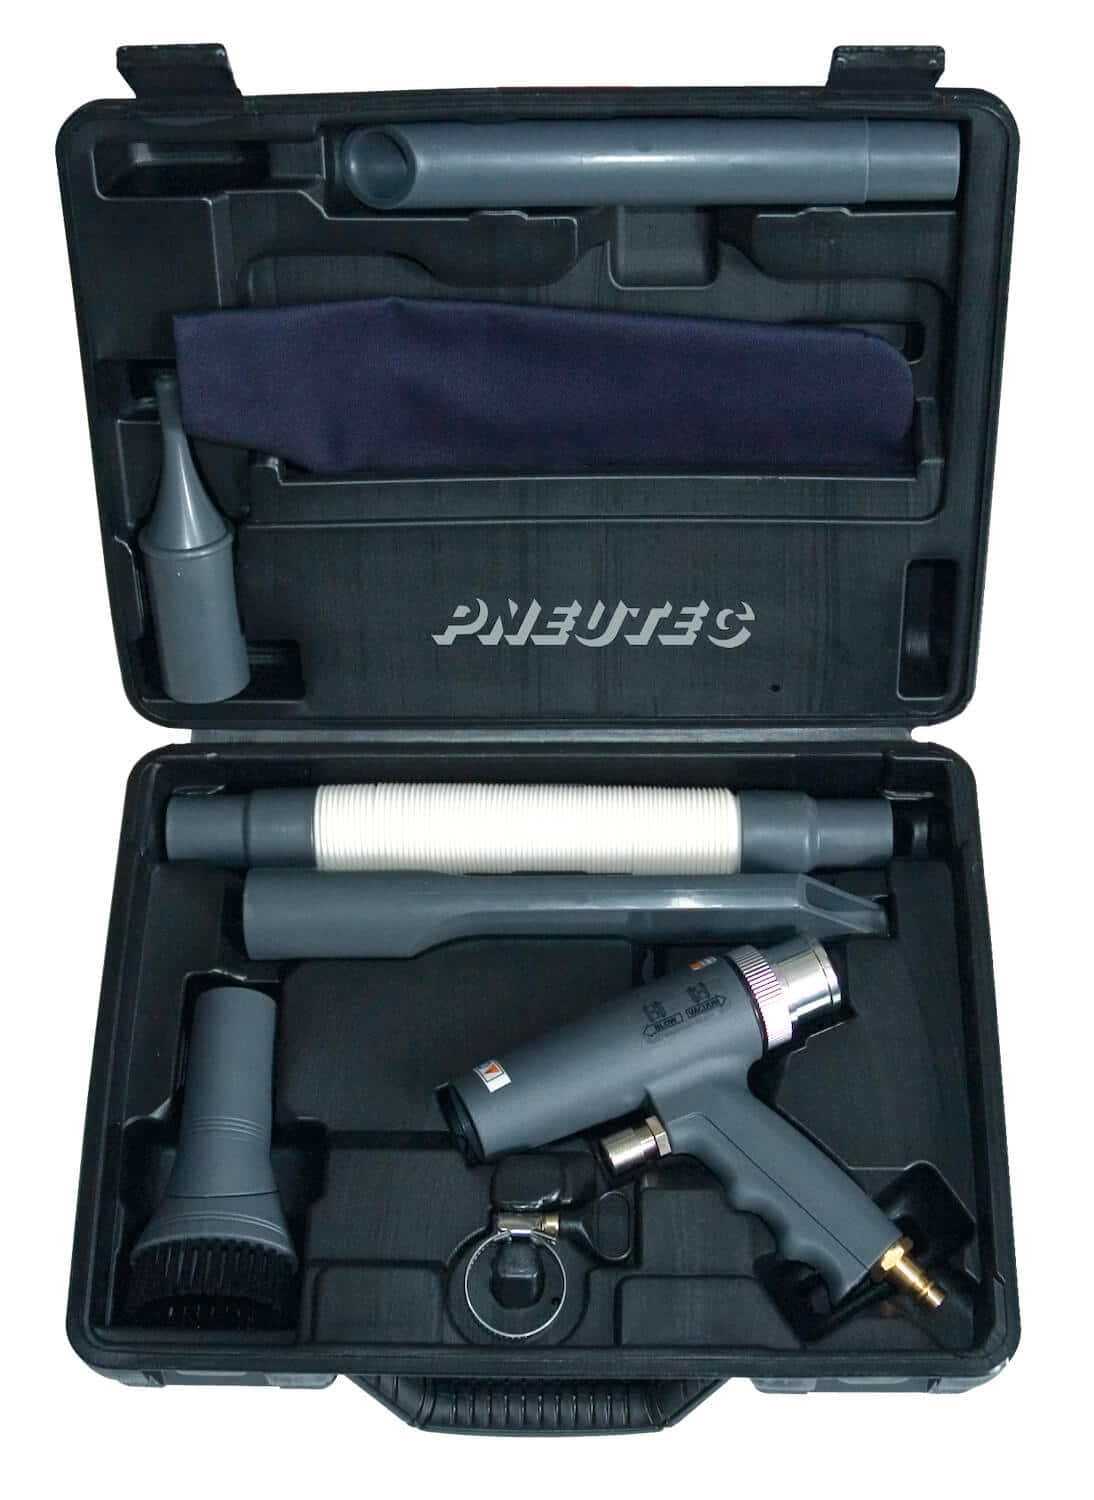 Staubsauger und Blaspistolen-Set mit umfangreichem Zubehör im praktischen Kunststoffkoffer.